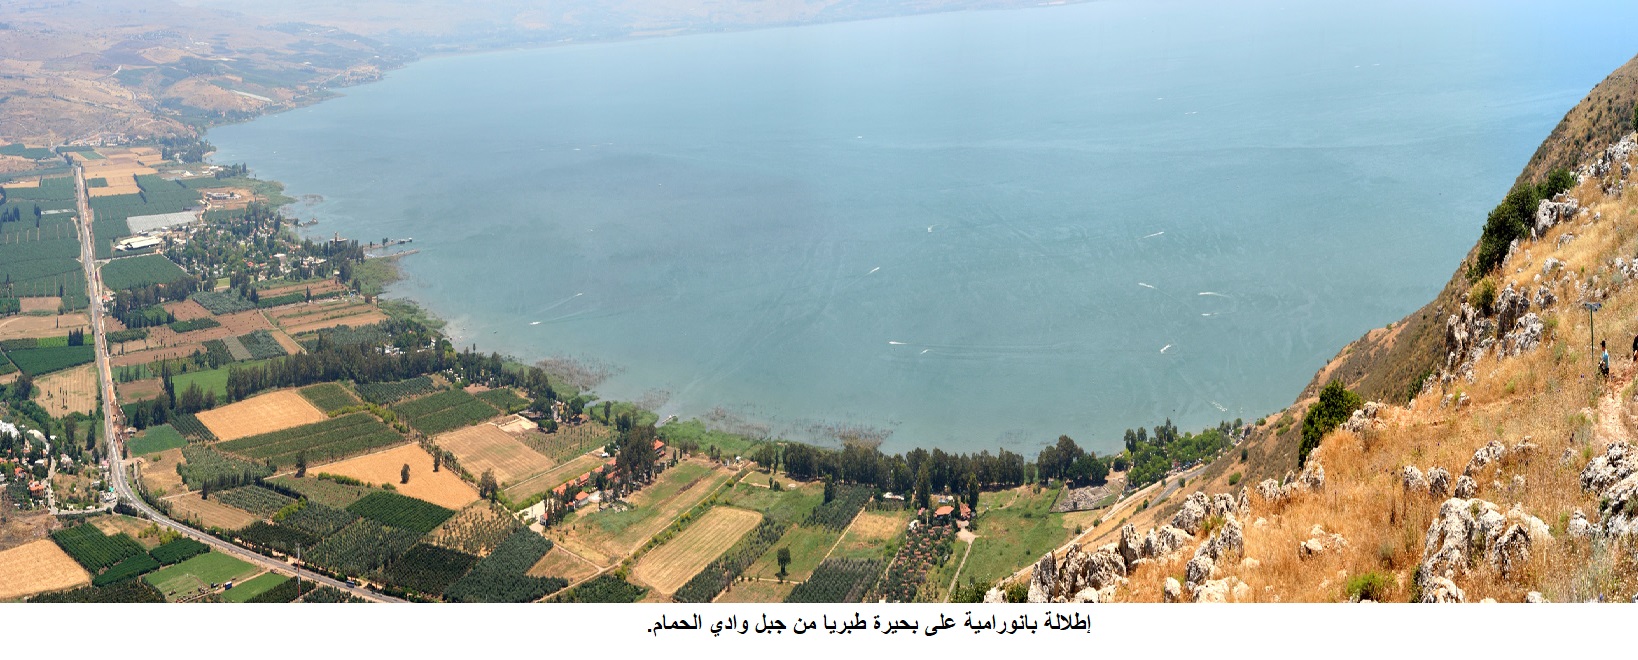 بحيرة طبريا ملتقى المياه العذبة.. هل يحمل جفافها رسالة دينية؟